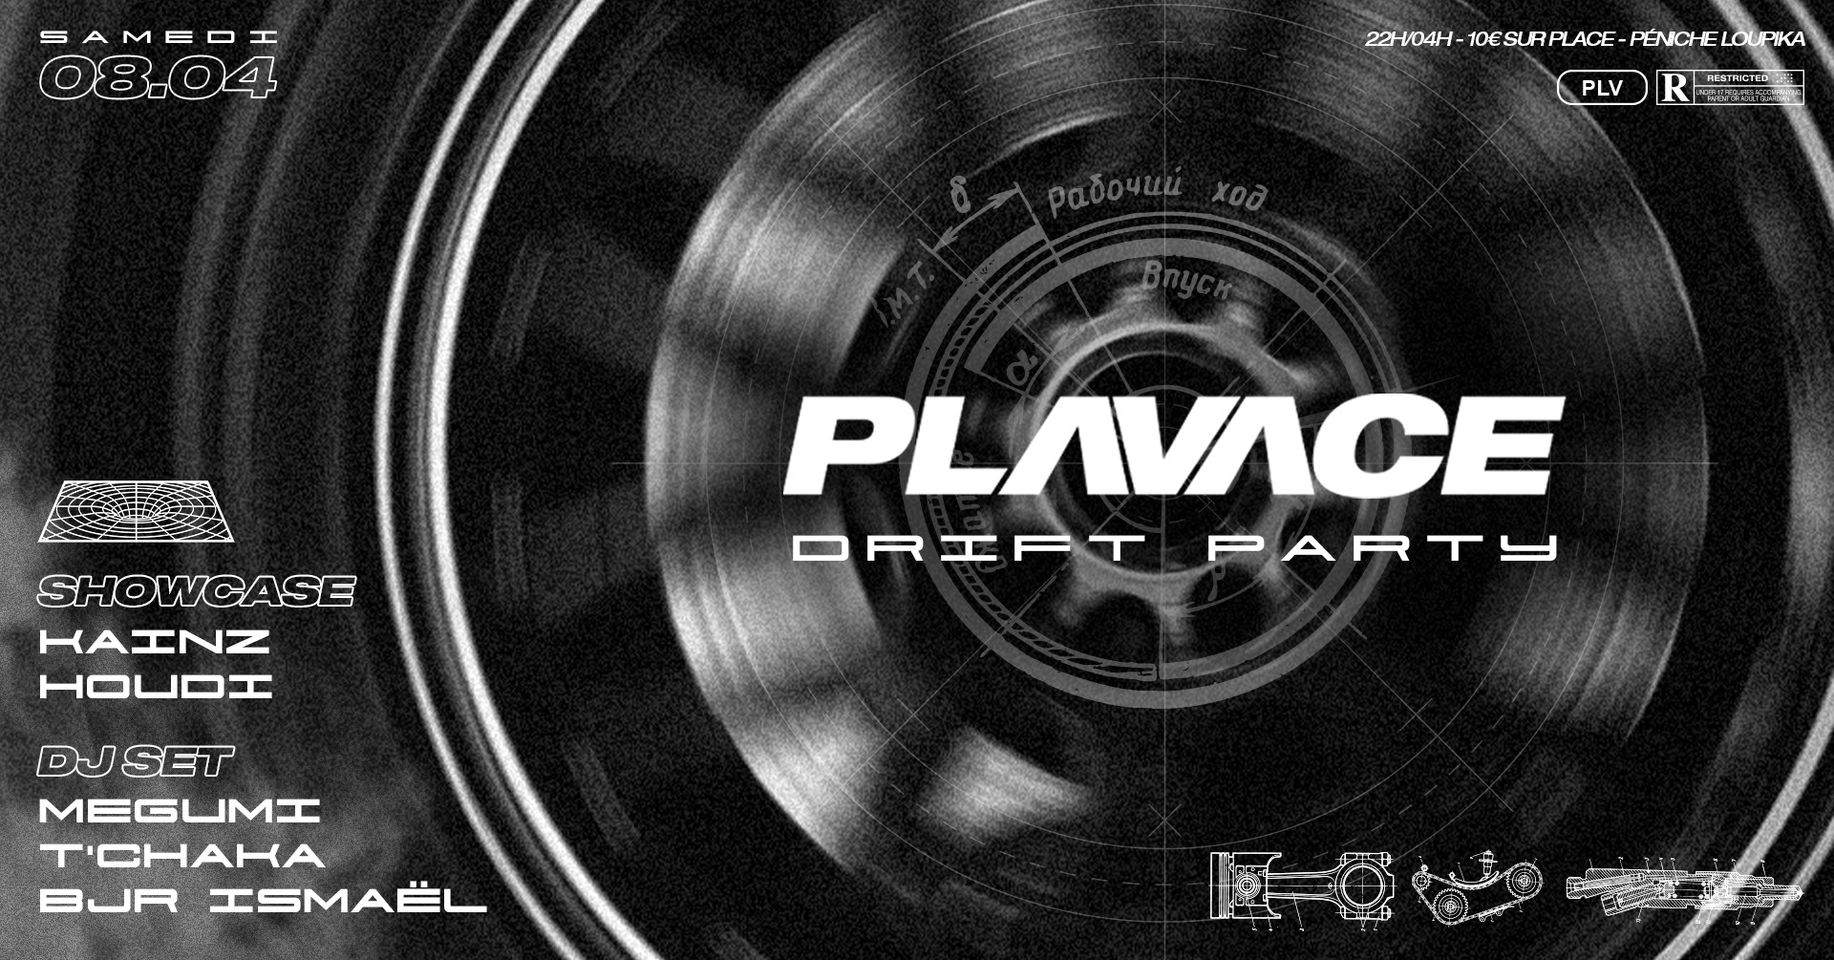 Plavace Drift Party - Showcase Houdi - フライヤー表